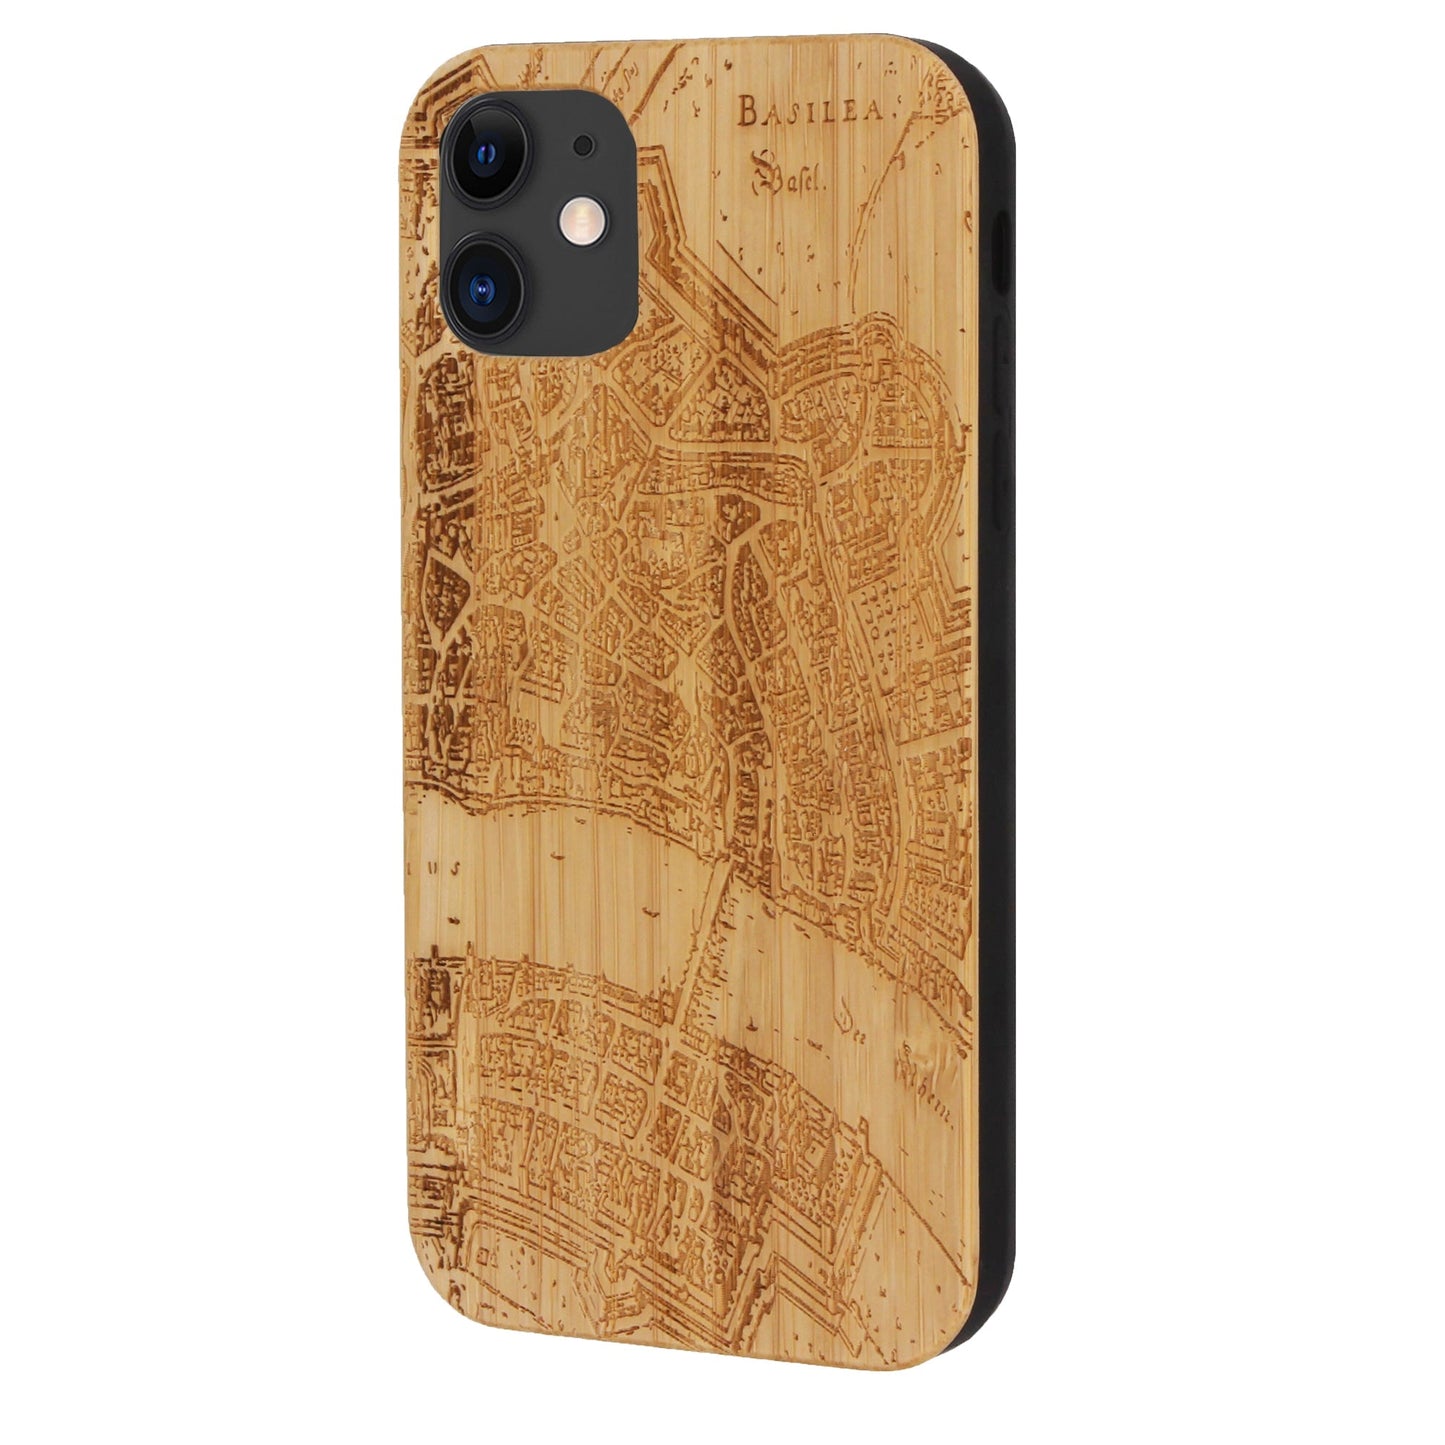 Basel Merian Eden Case aus Bambus für iPhone 11